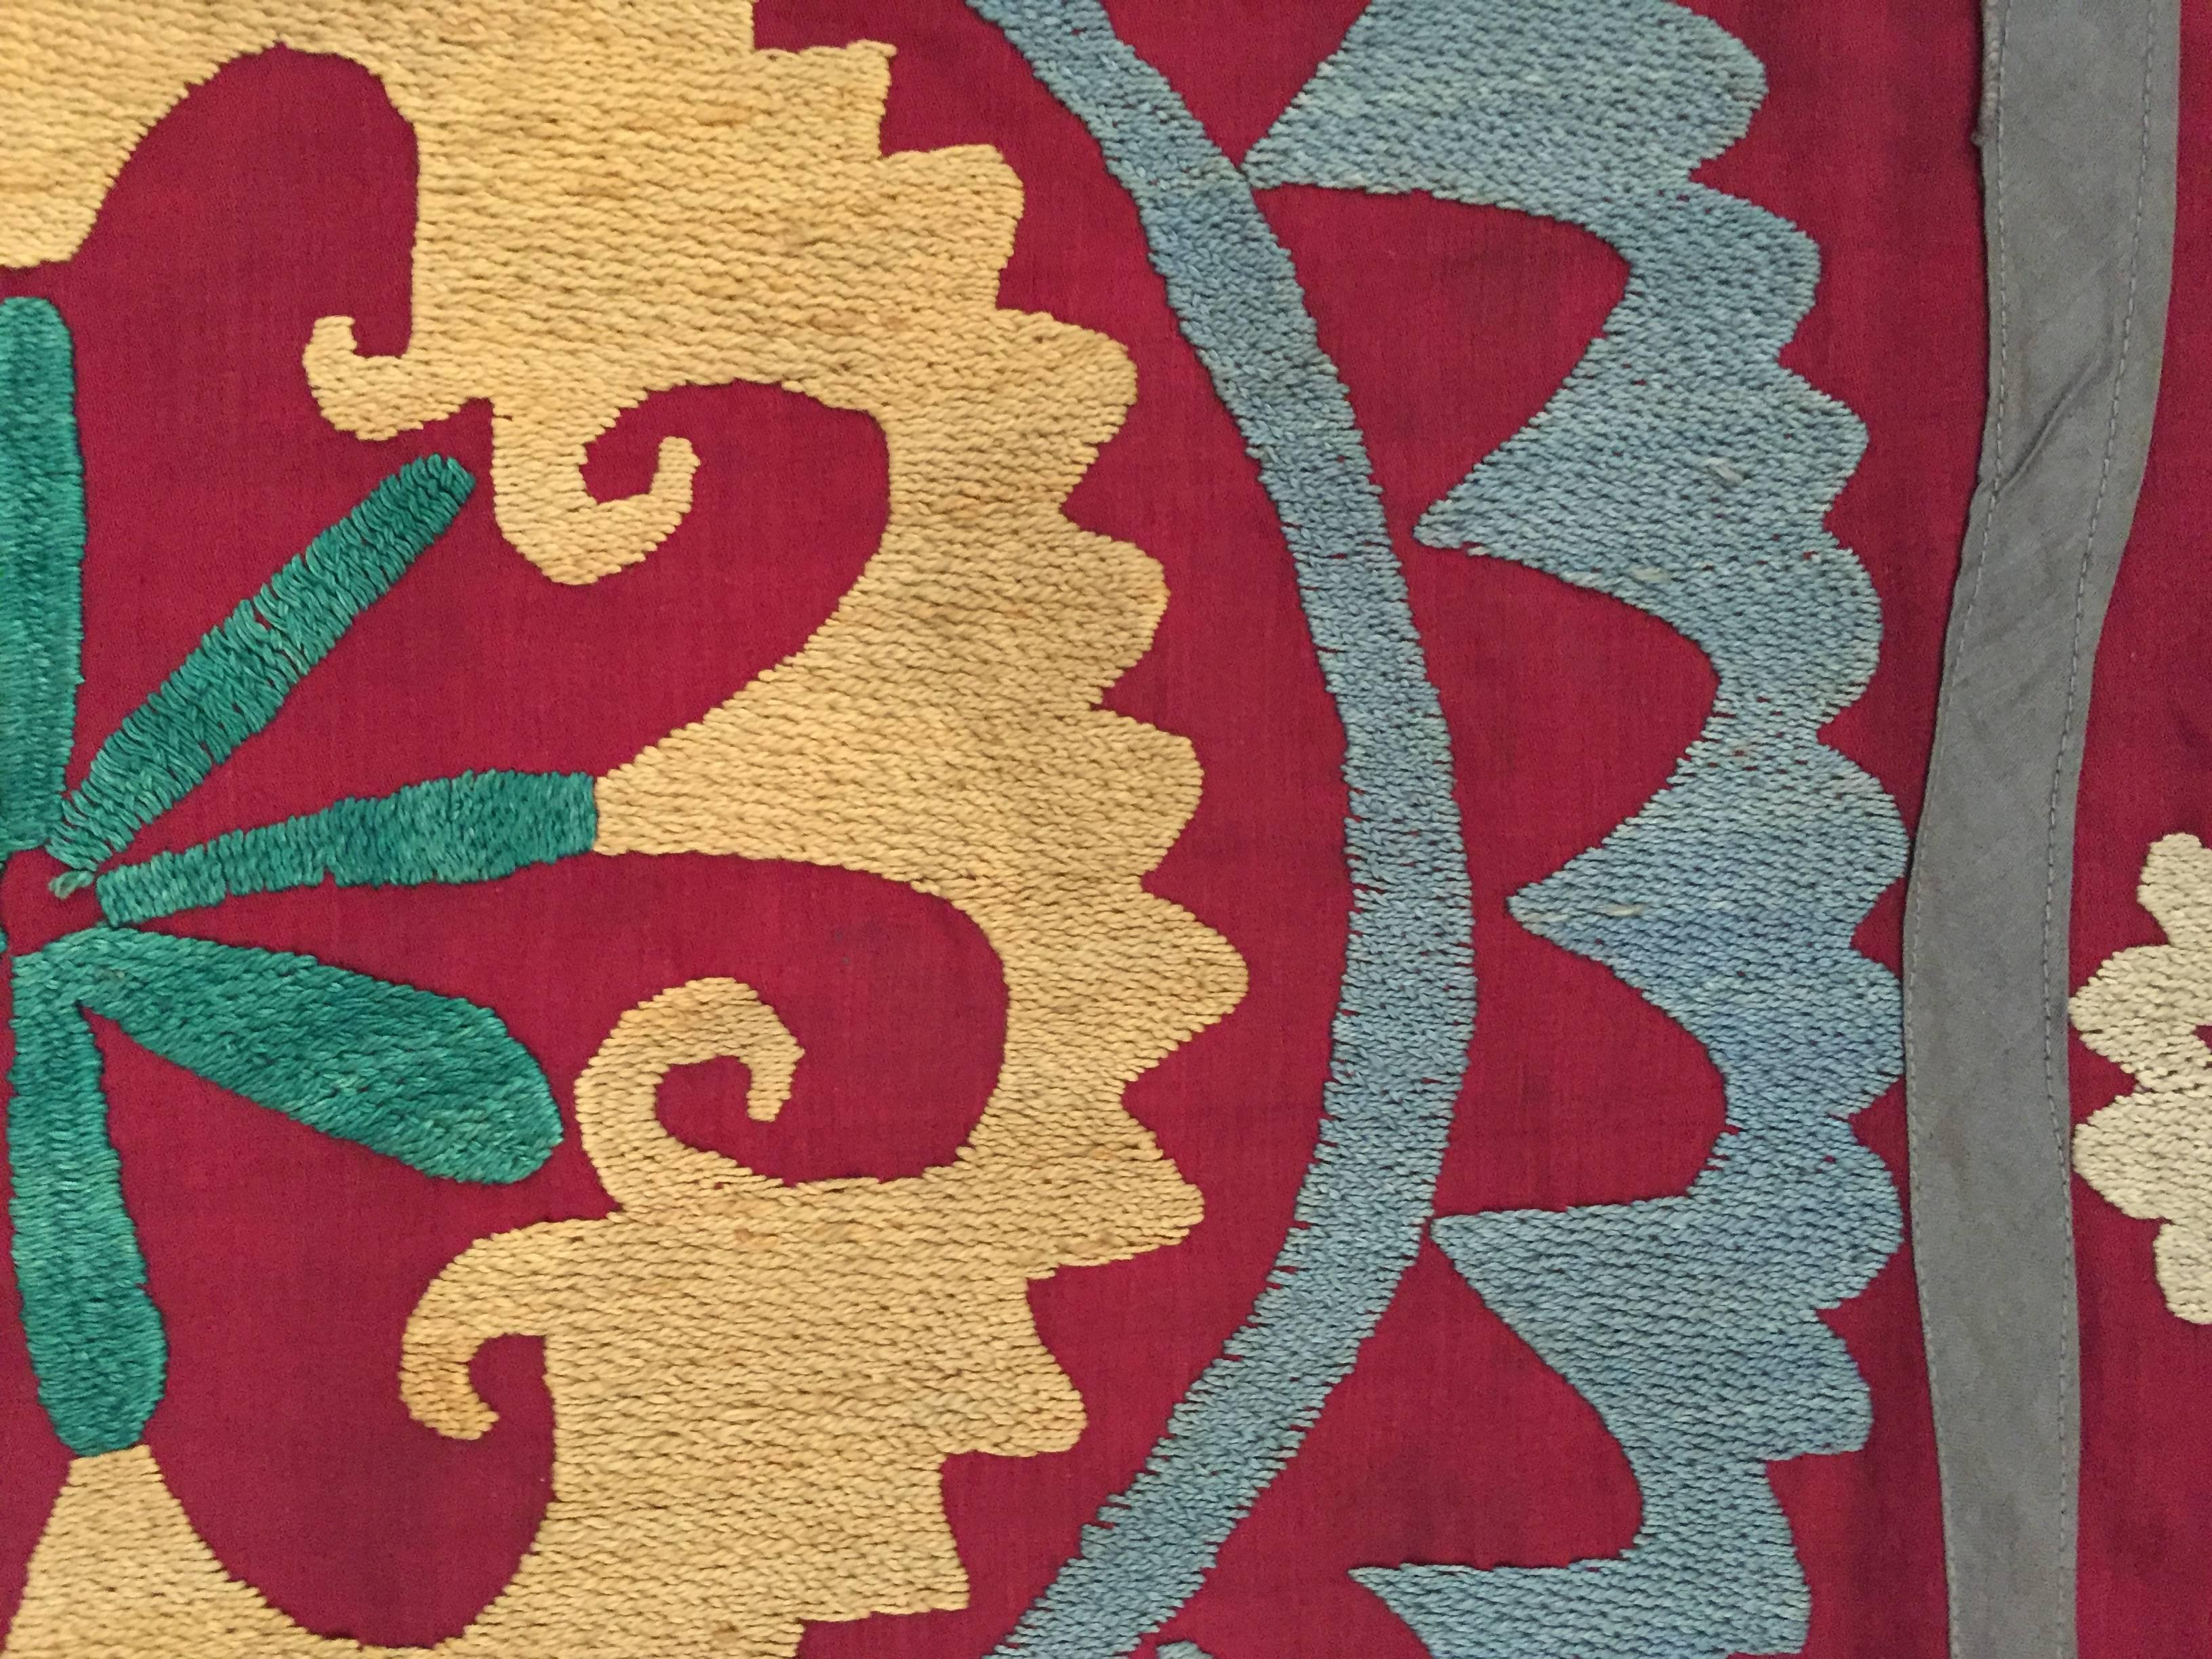 20th Century Large Vintage Uzbek Suzani Needlework Textile Blanket or Tapestry